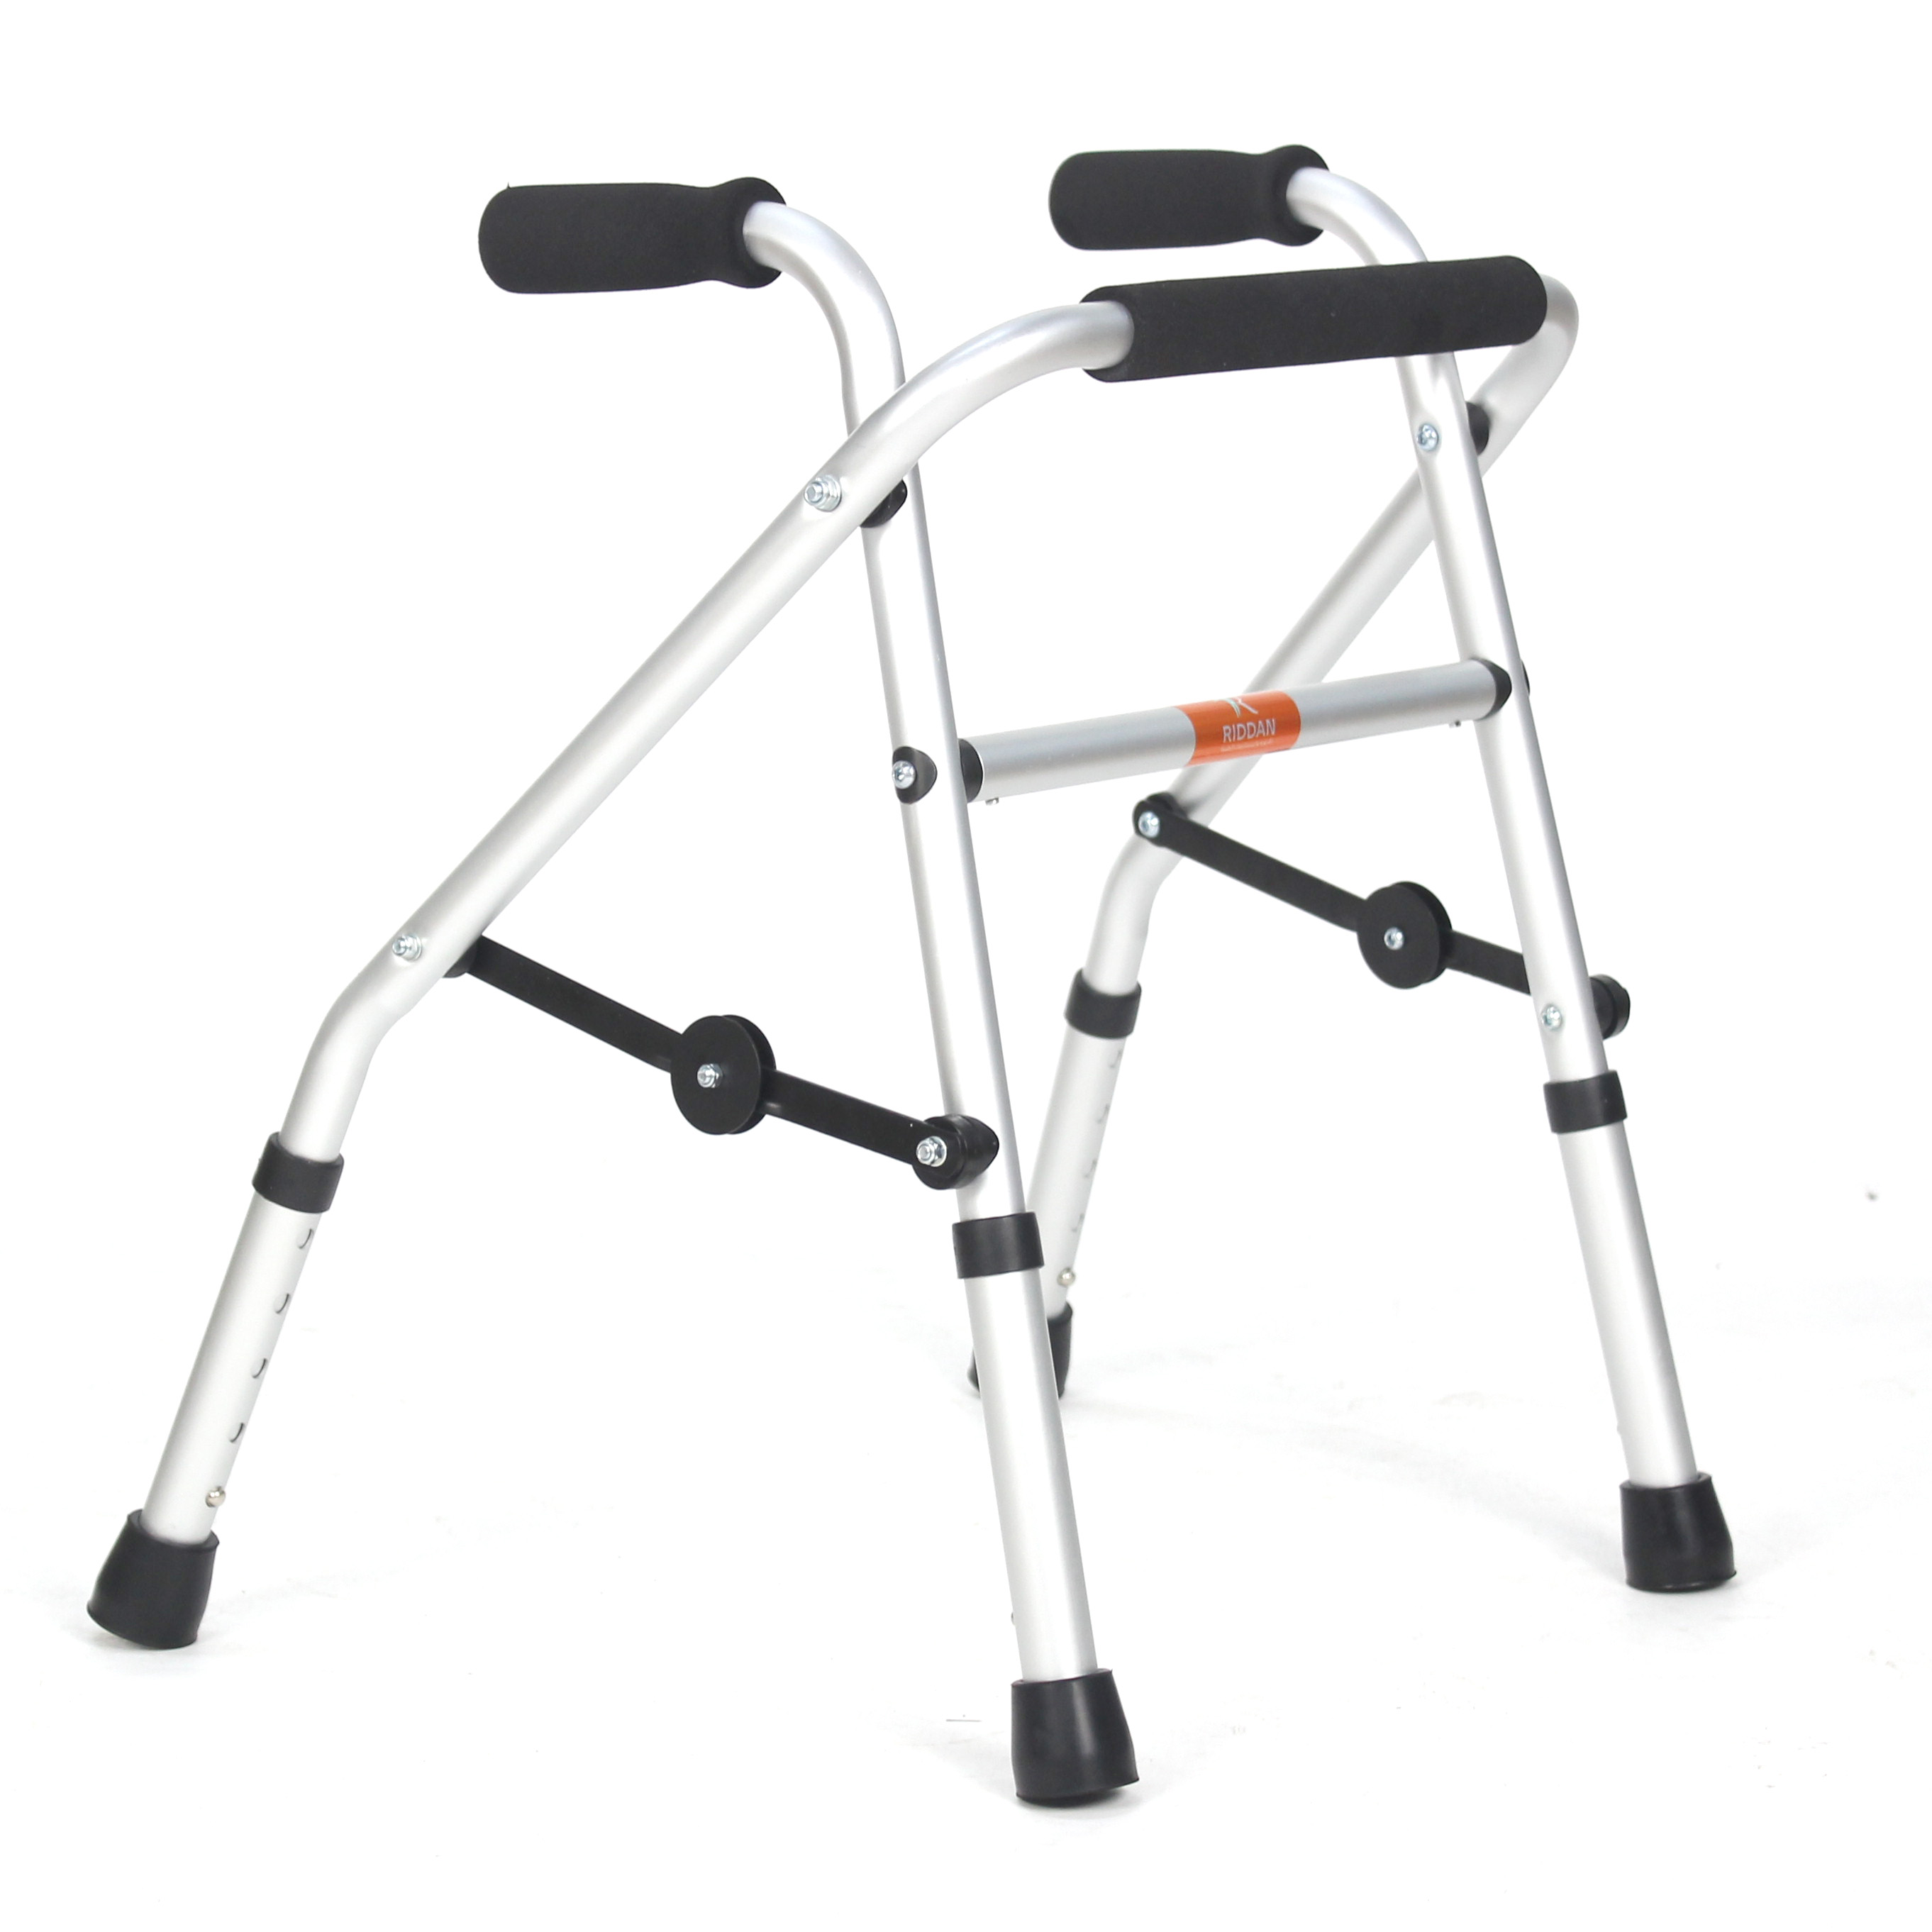 Light weight walker medical equipment kids walker with aluminium frame walker for adults